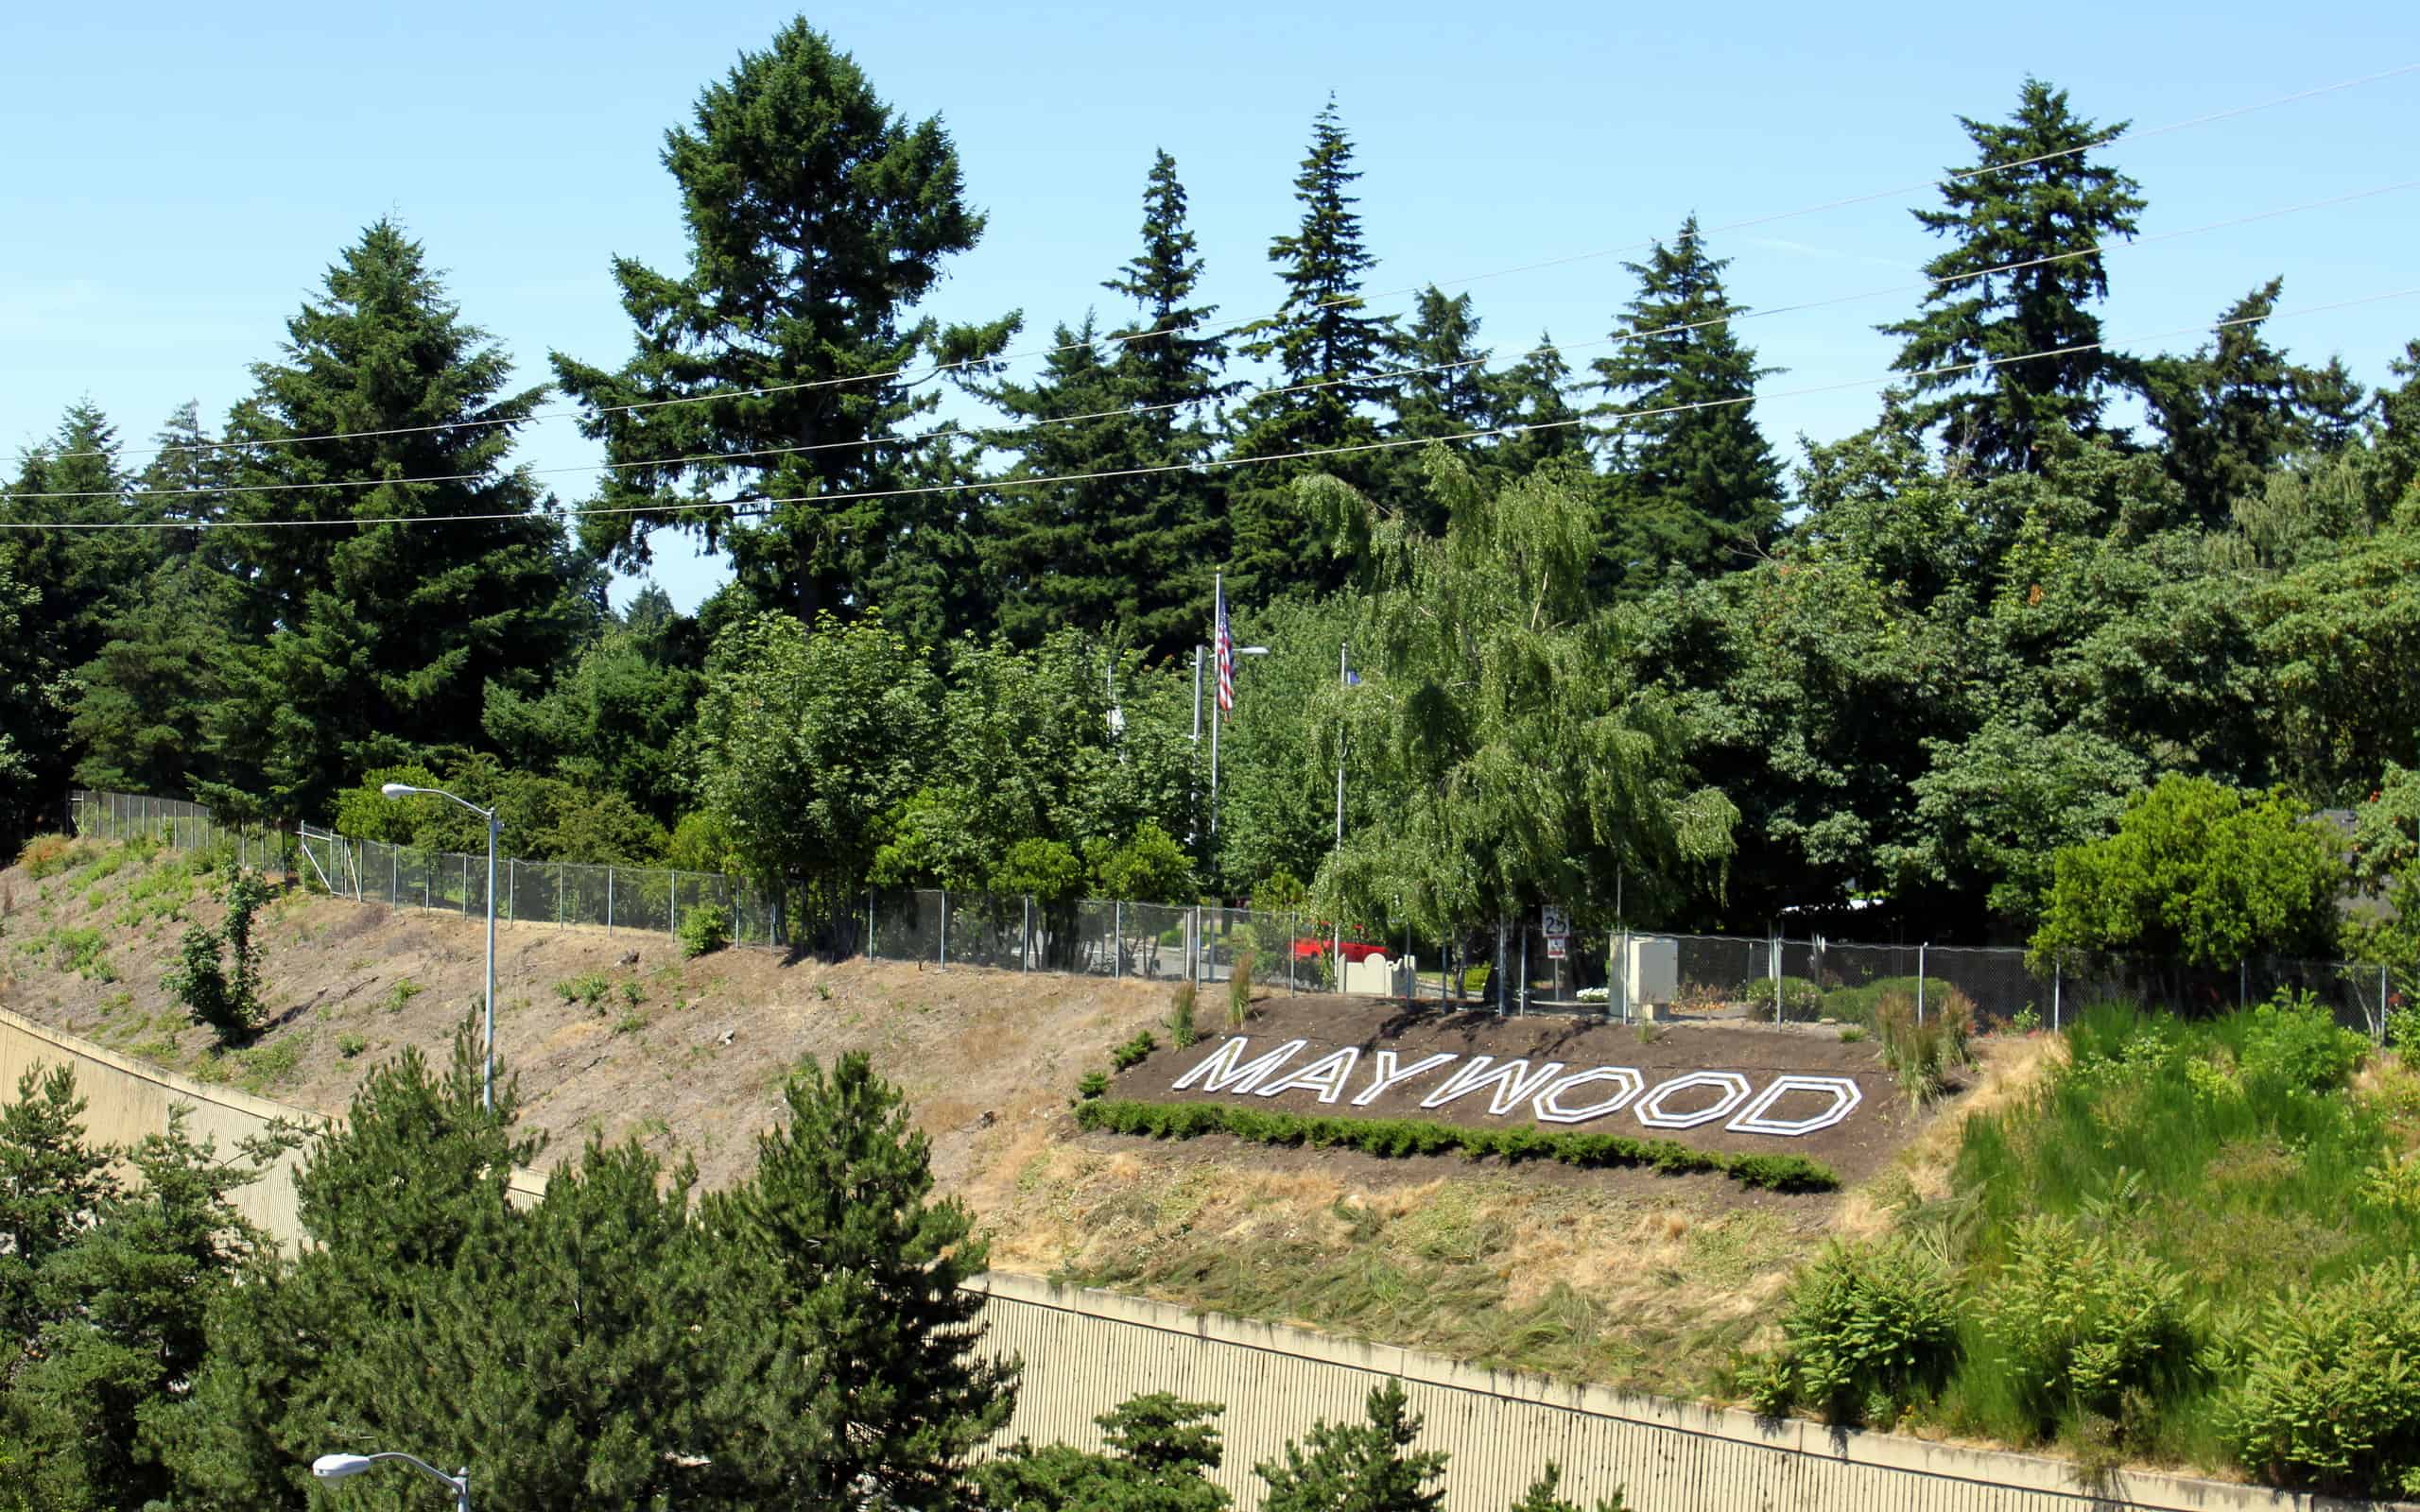 MAYWOOD hillside letters for Maywood Park, Oregon.